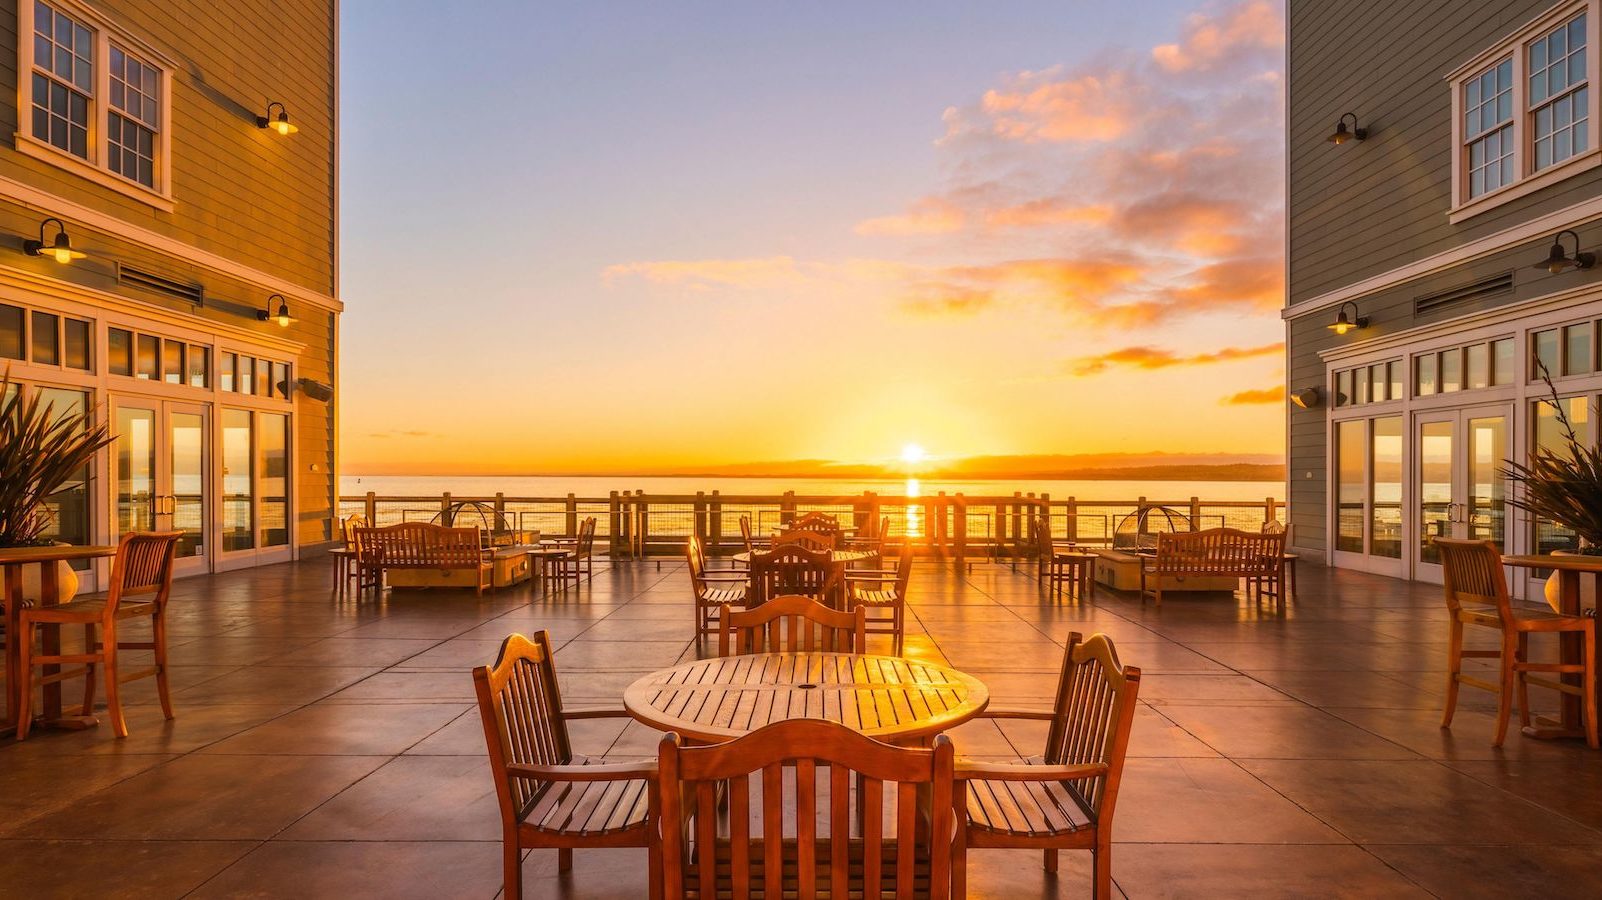 Outdoor patio overlooking ocean at Intercontinental's Clement Monterey in Monterey, California.